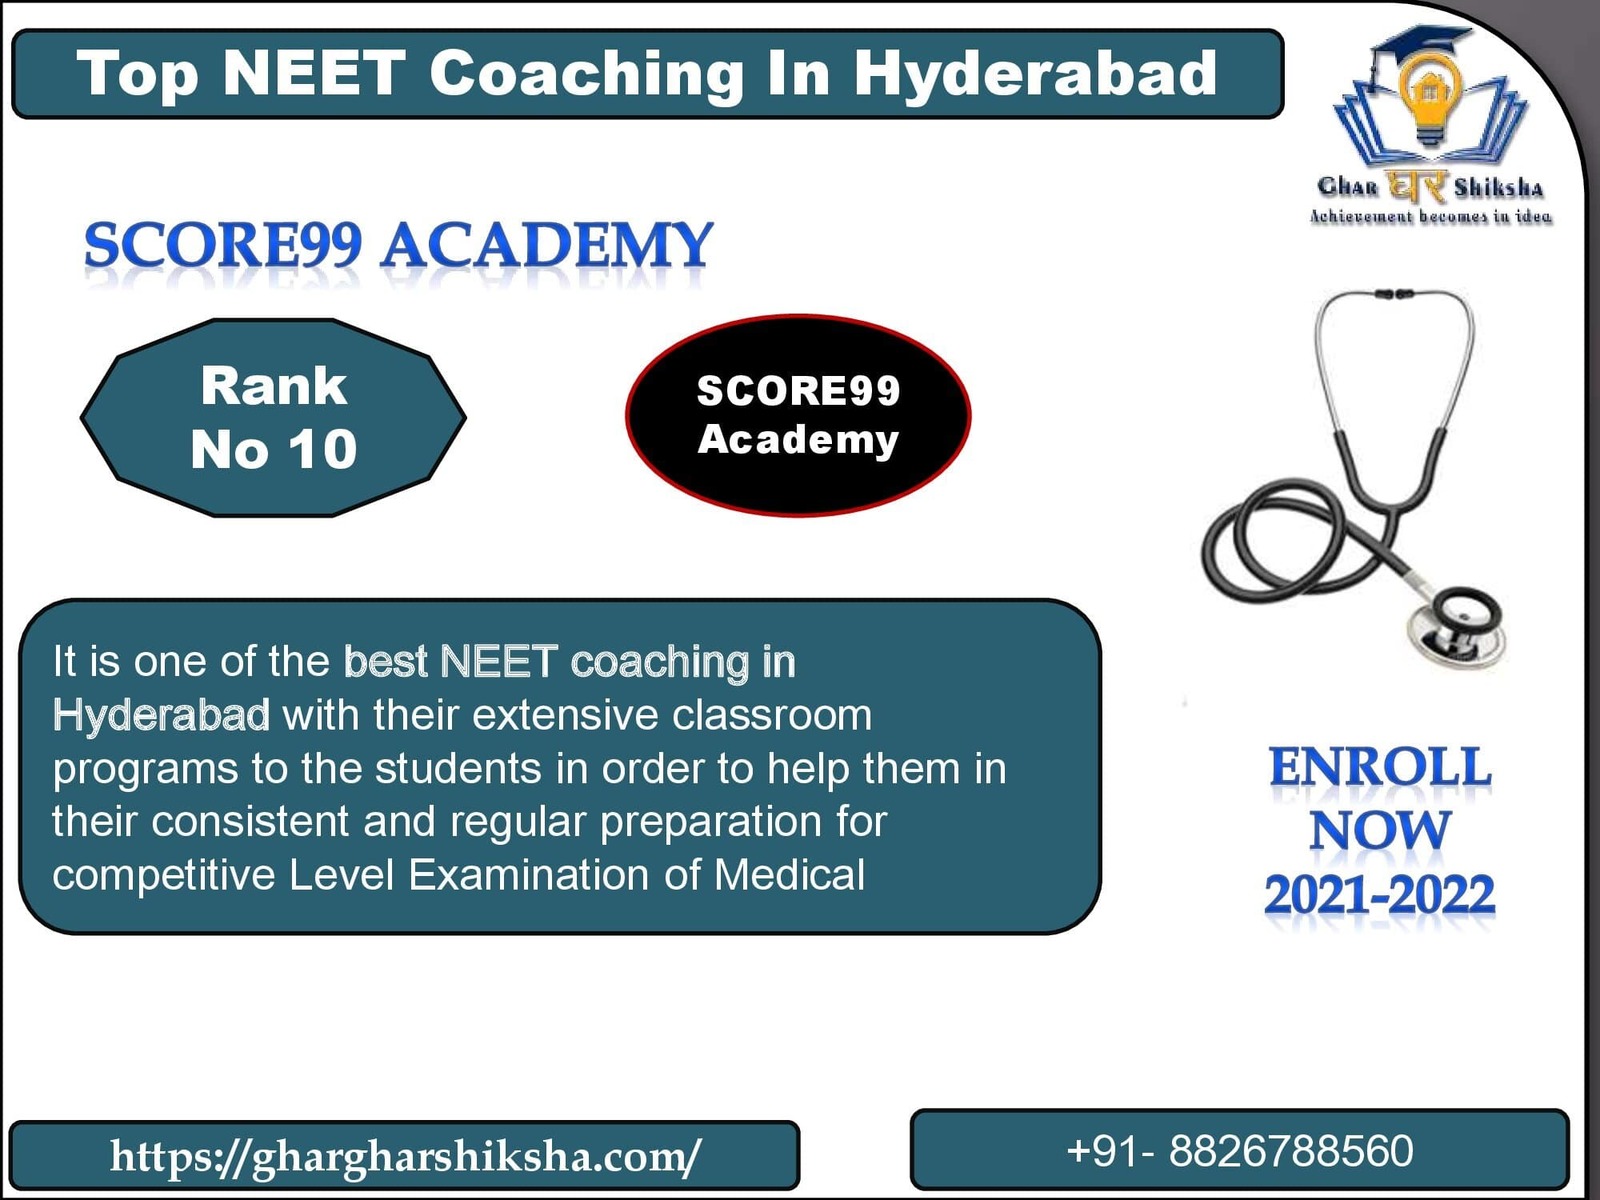 Score99 Academy | Top NEET Coaching in Hyderabad